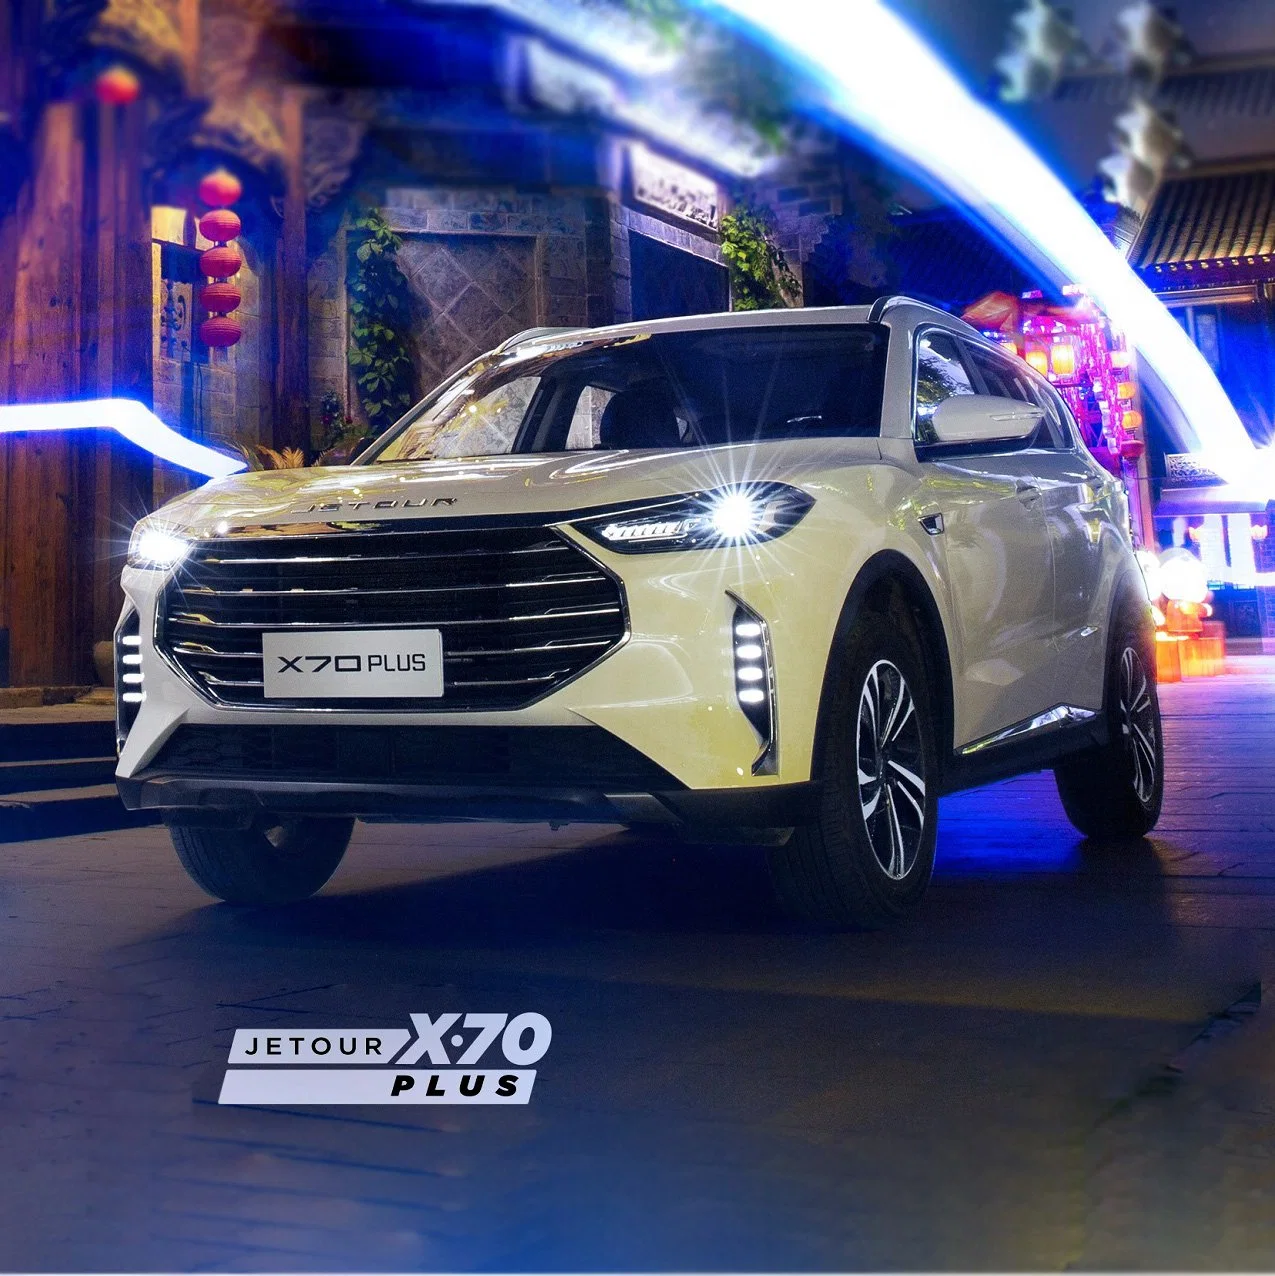 2023 fabricado en China Chery Jetour autos de gasolina con capacidad de carga frontal de la unidad de la gasolina tipo SUV mediano Jetour X70, además de los coches deportivos Gas